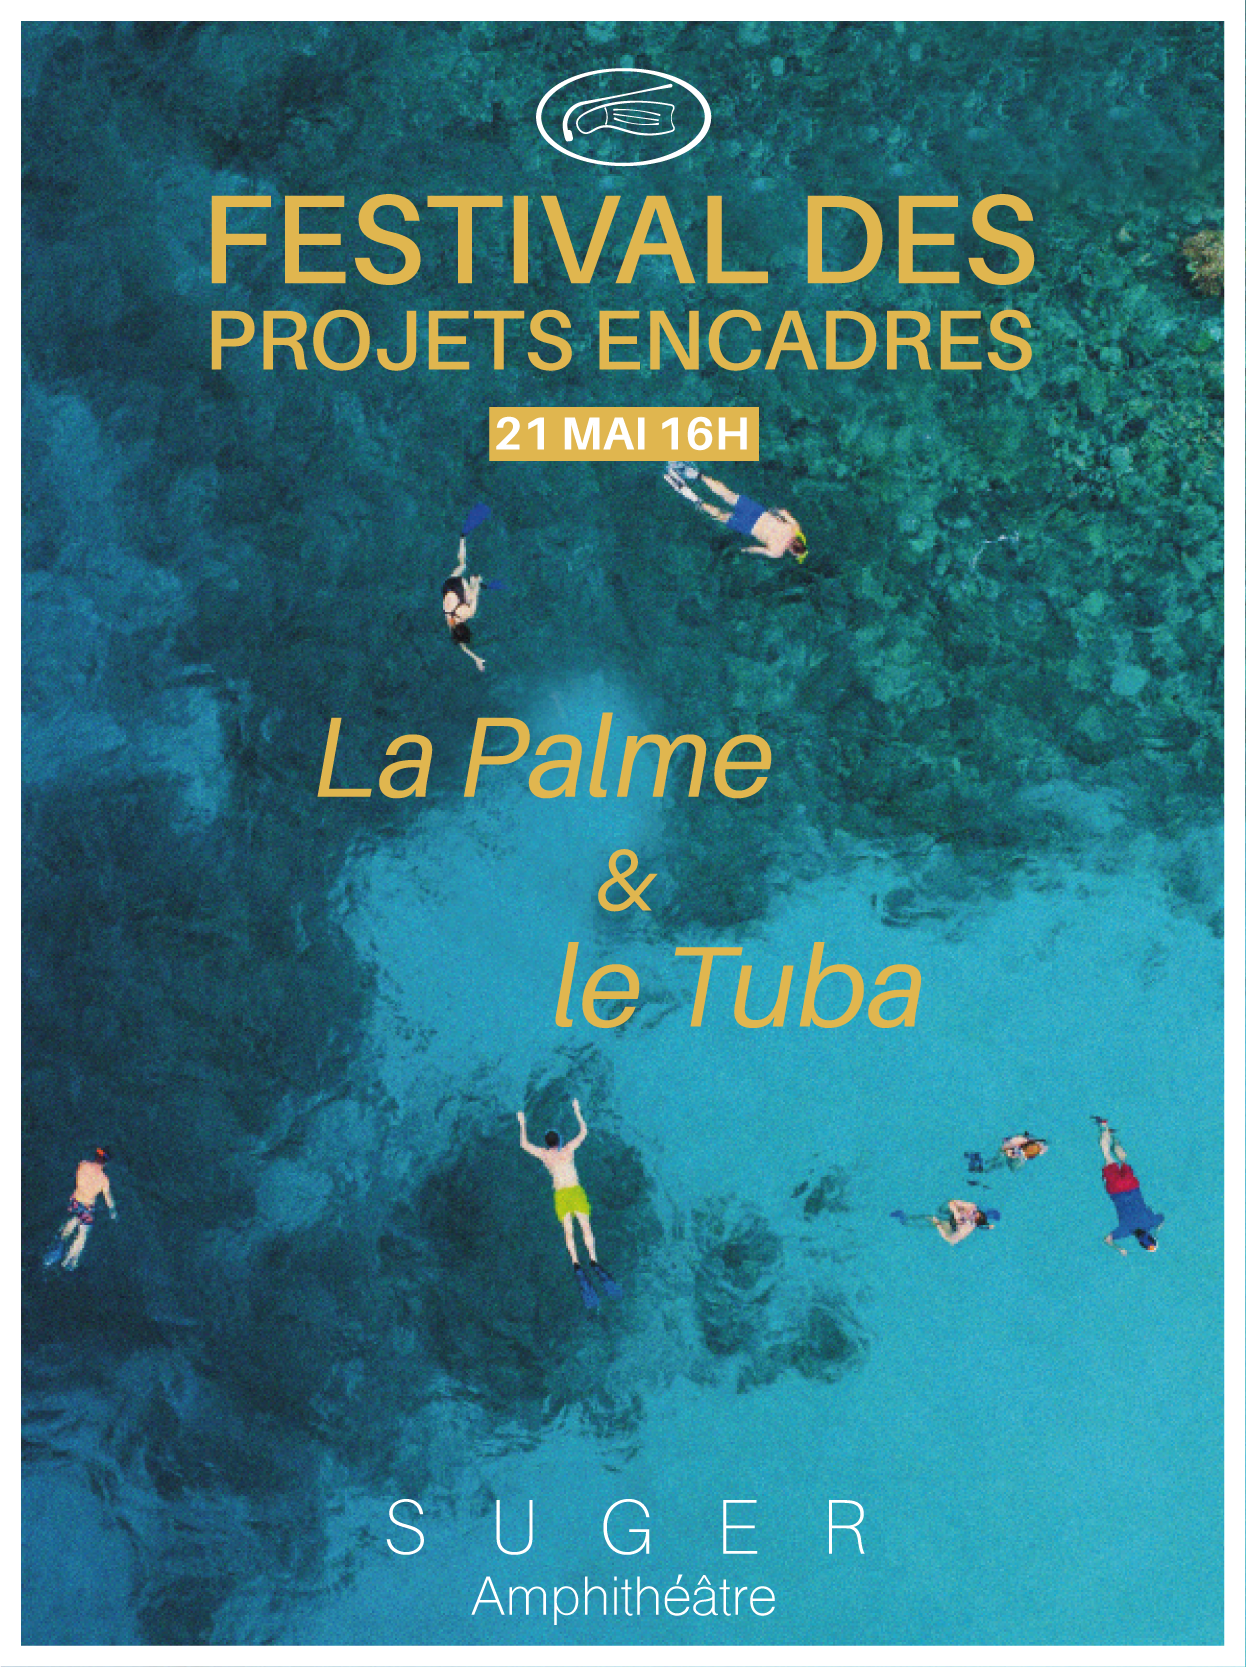 Suivez le Festival des Projets Encadrés “La Palme et du Tuba » des BTS Audiovisuel 2e année le Vendredi 21 mai 2021